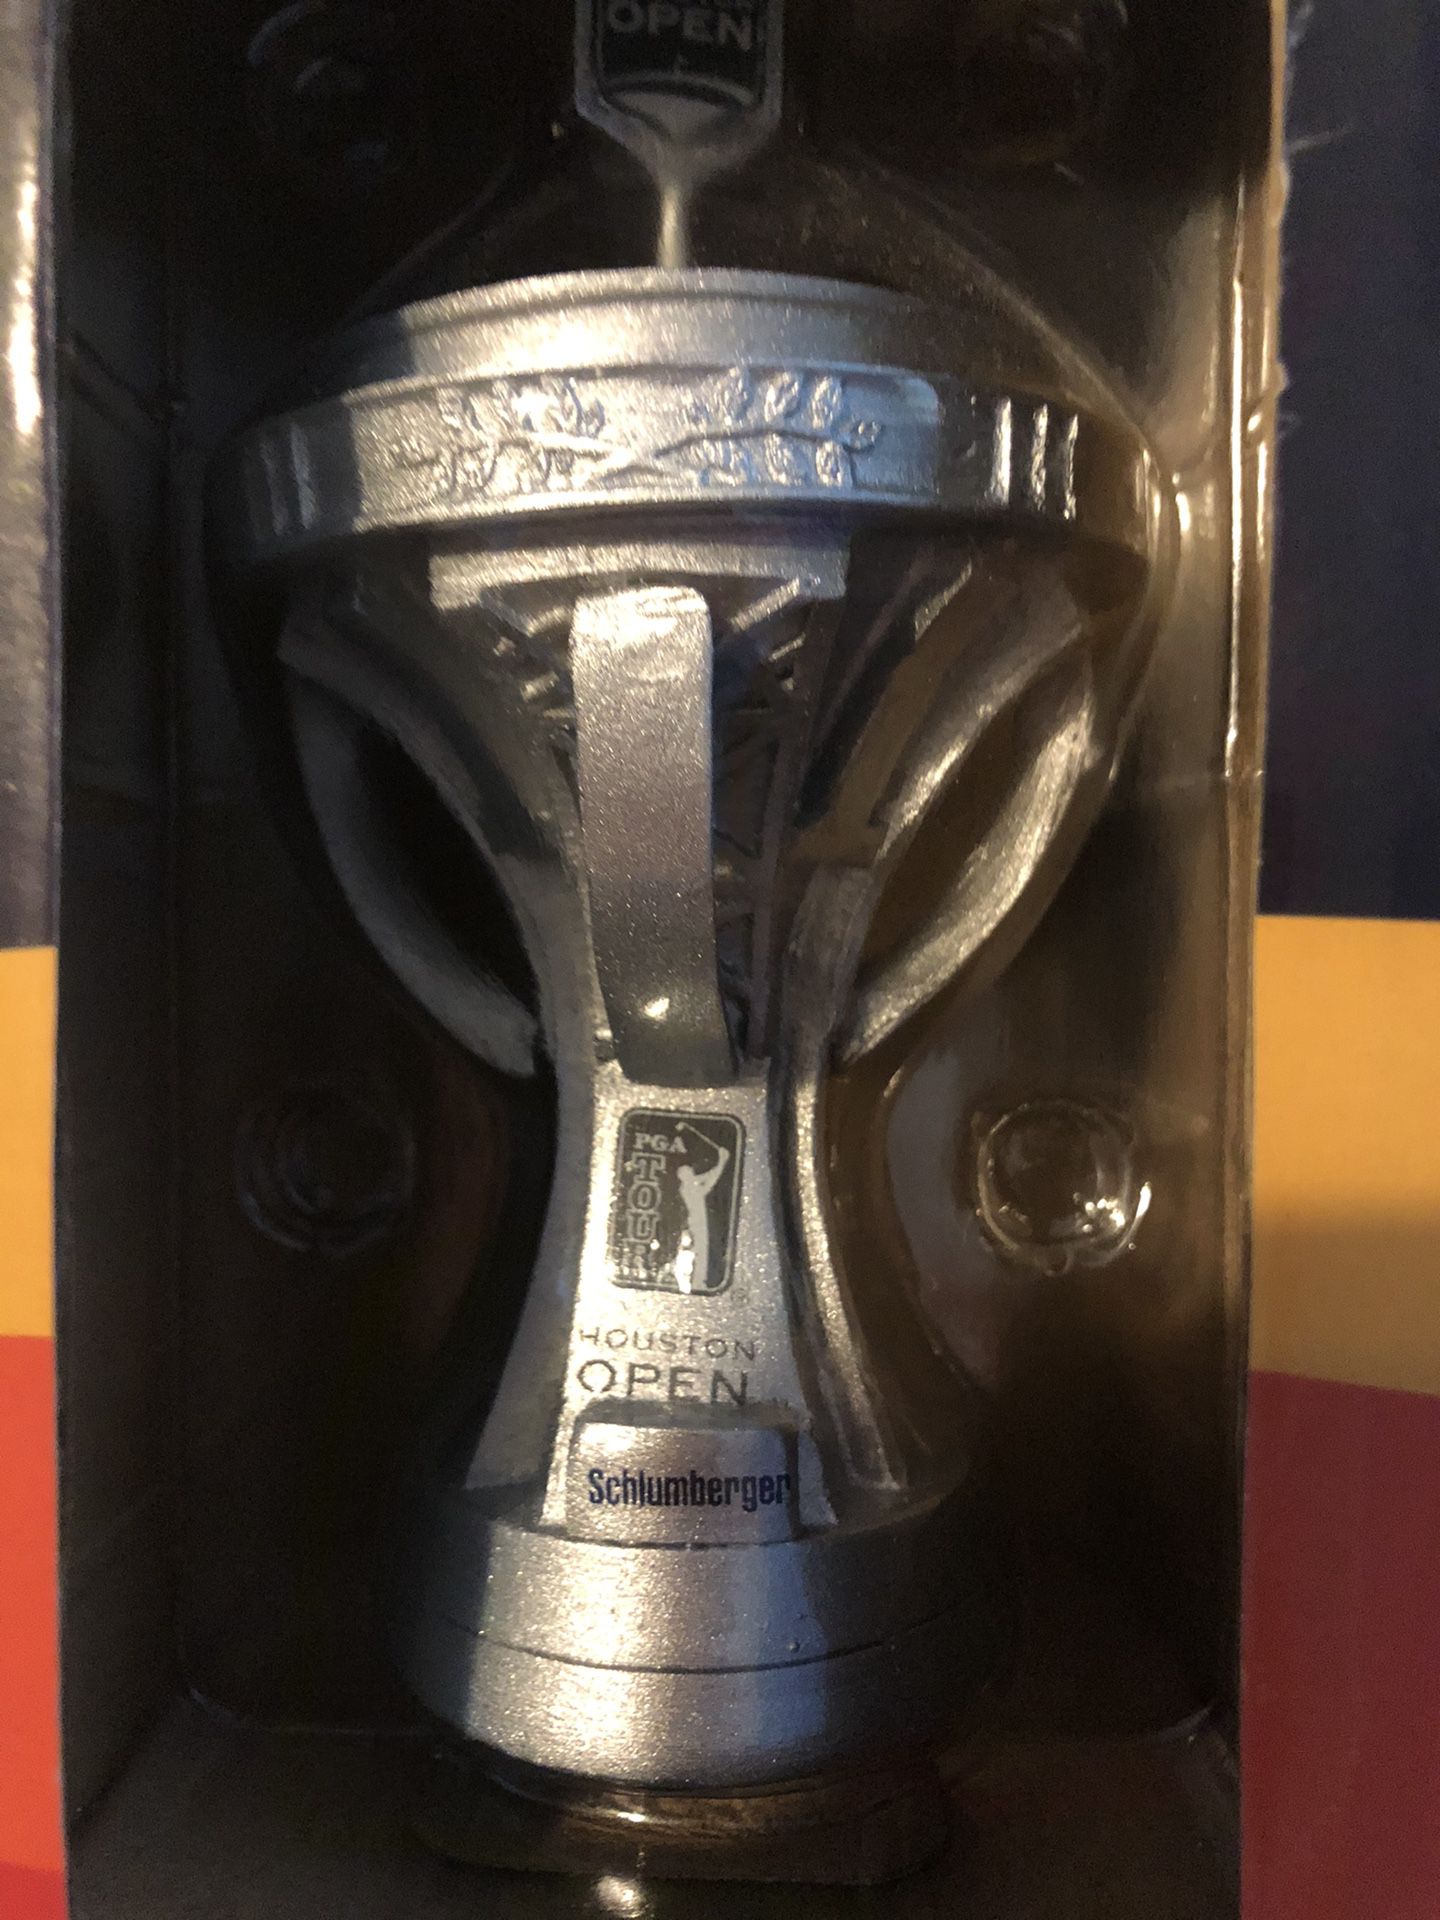 Houston Open Astro’s Golf Trophy Cup Souvenir